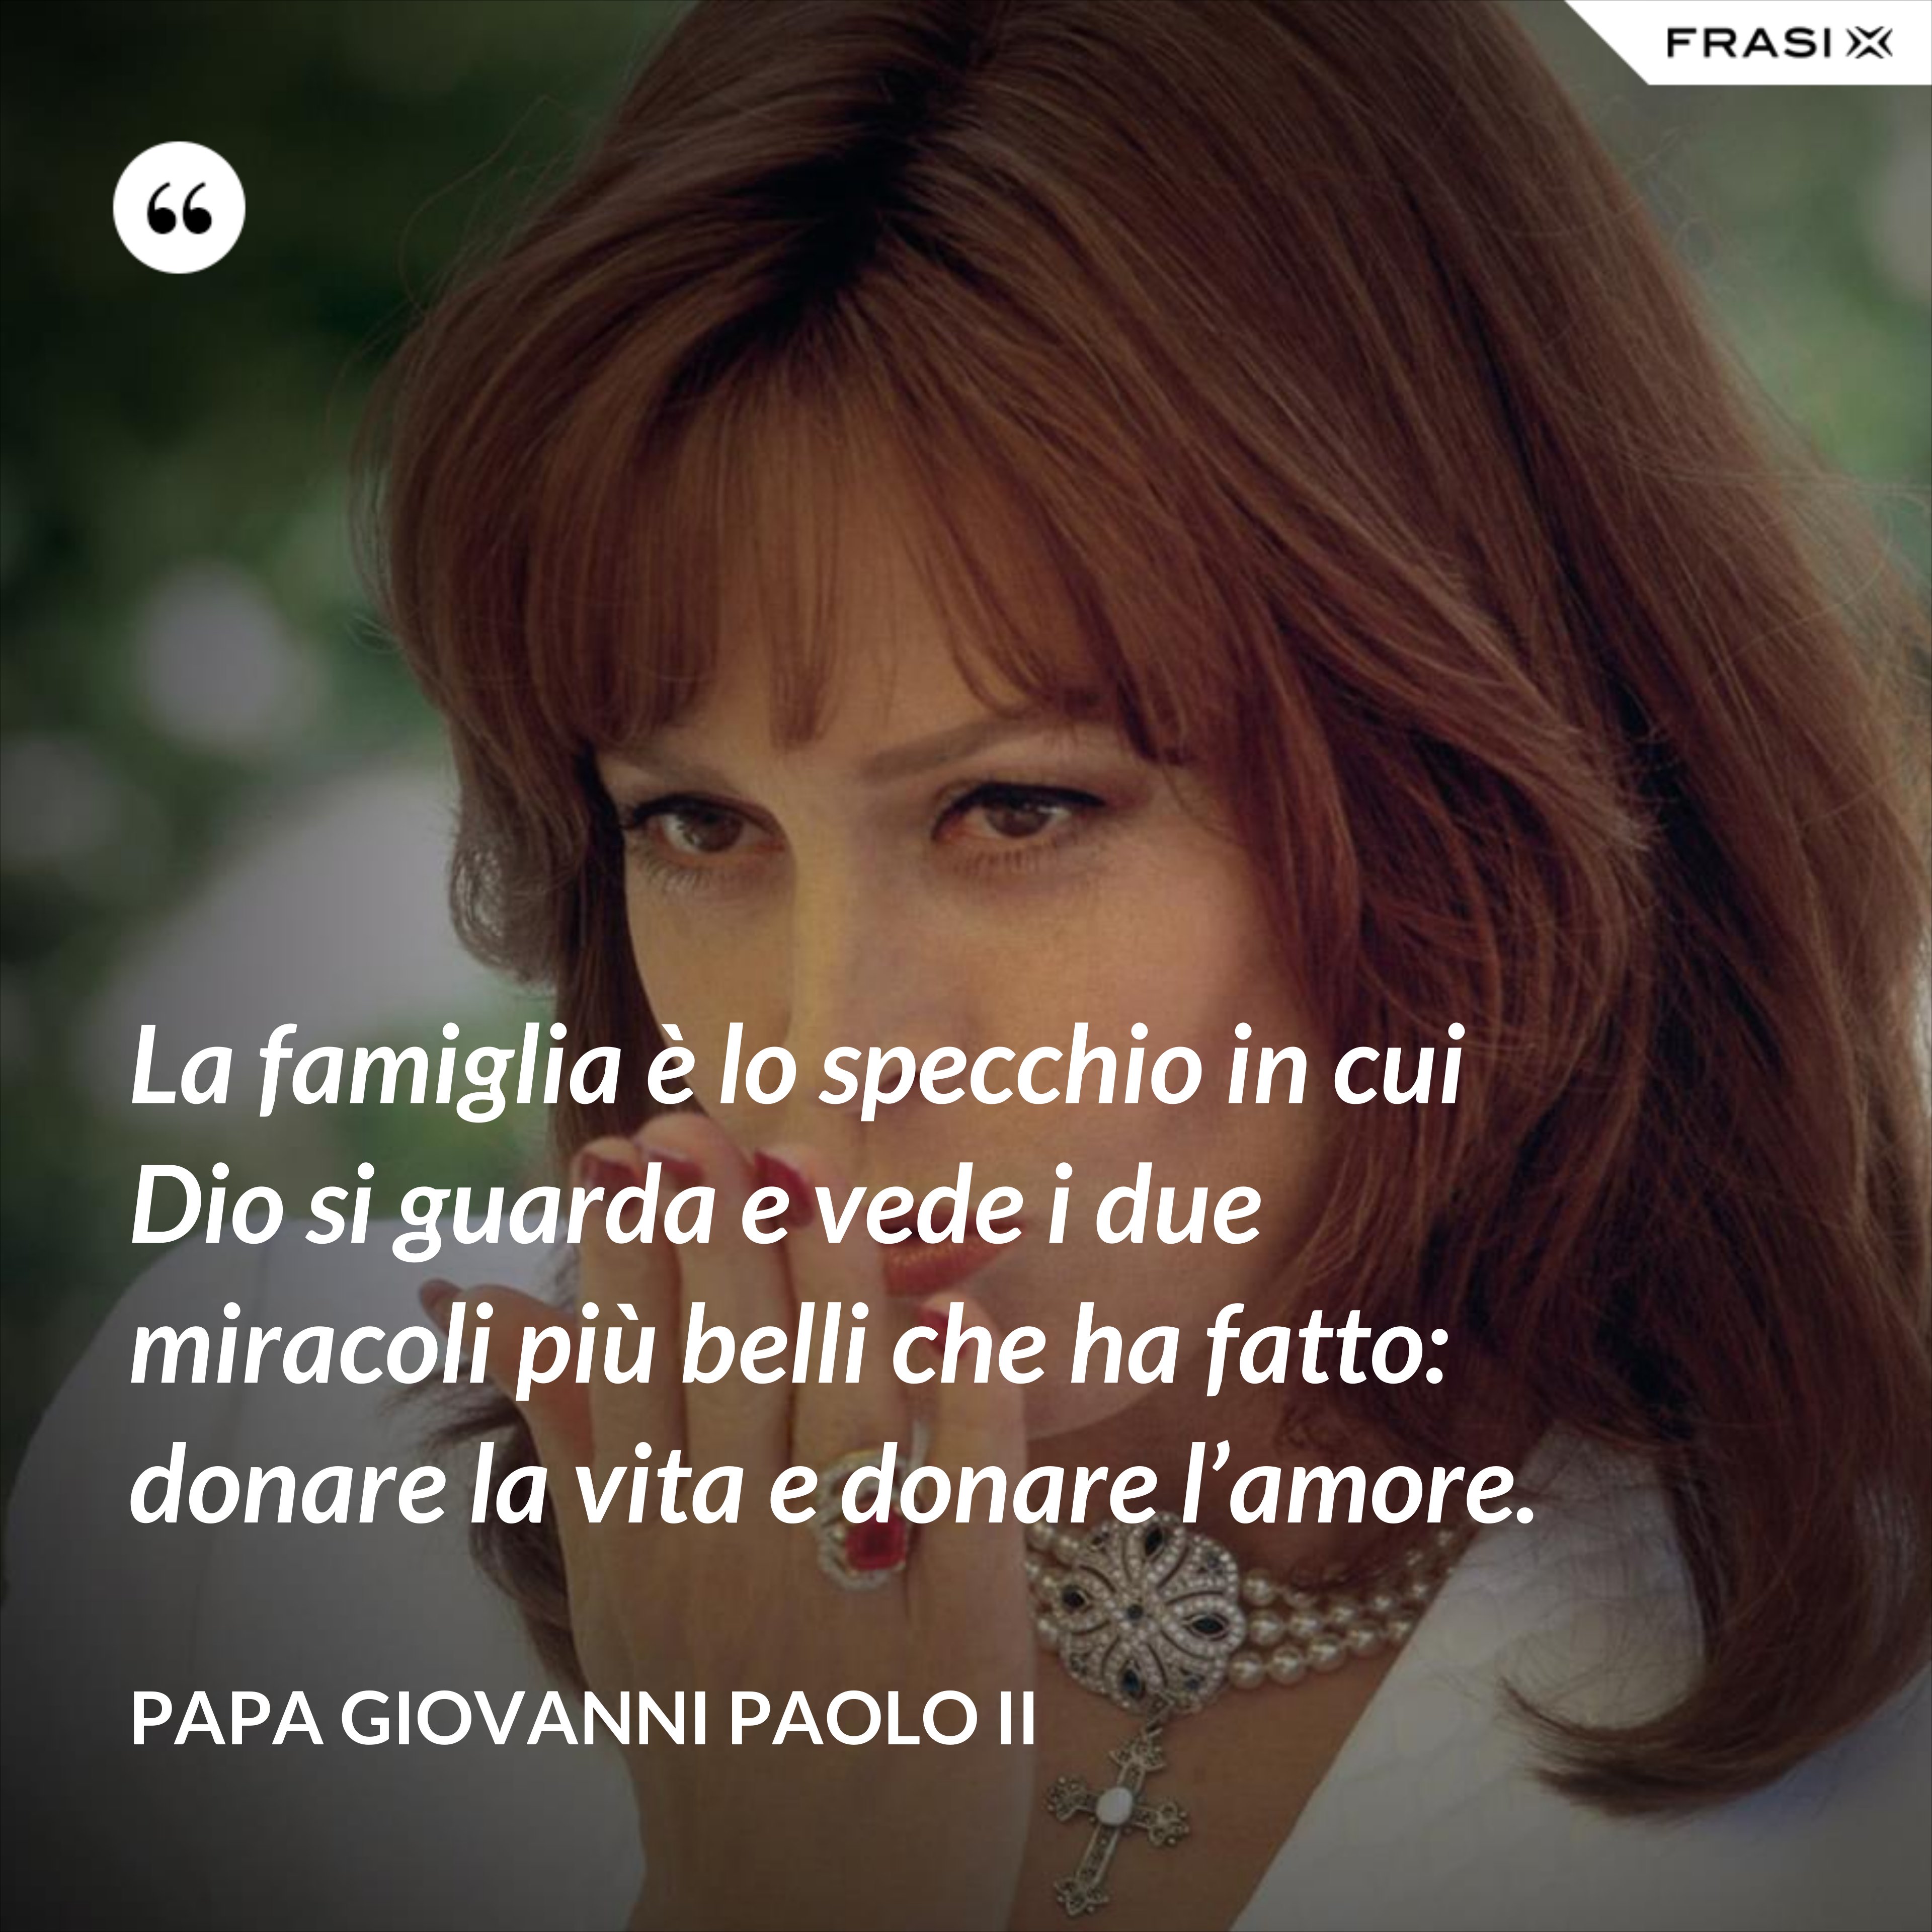 La famiglia è lo specchio in cui Dio si guarda e vede i due miracoli più belli che ha fatto: donare la vita e donare l’amore. - Papa Giovanni Paolo II